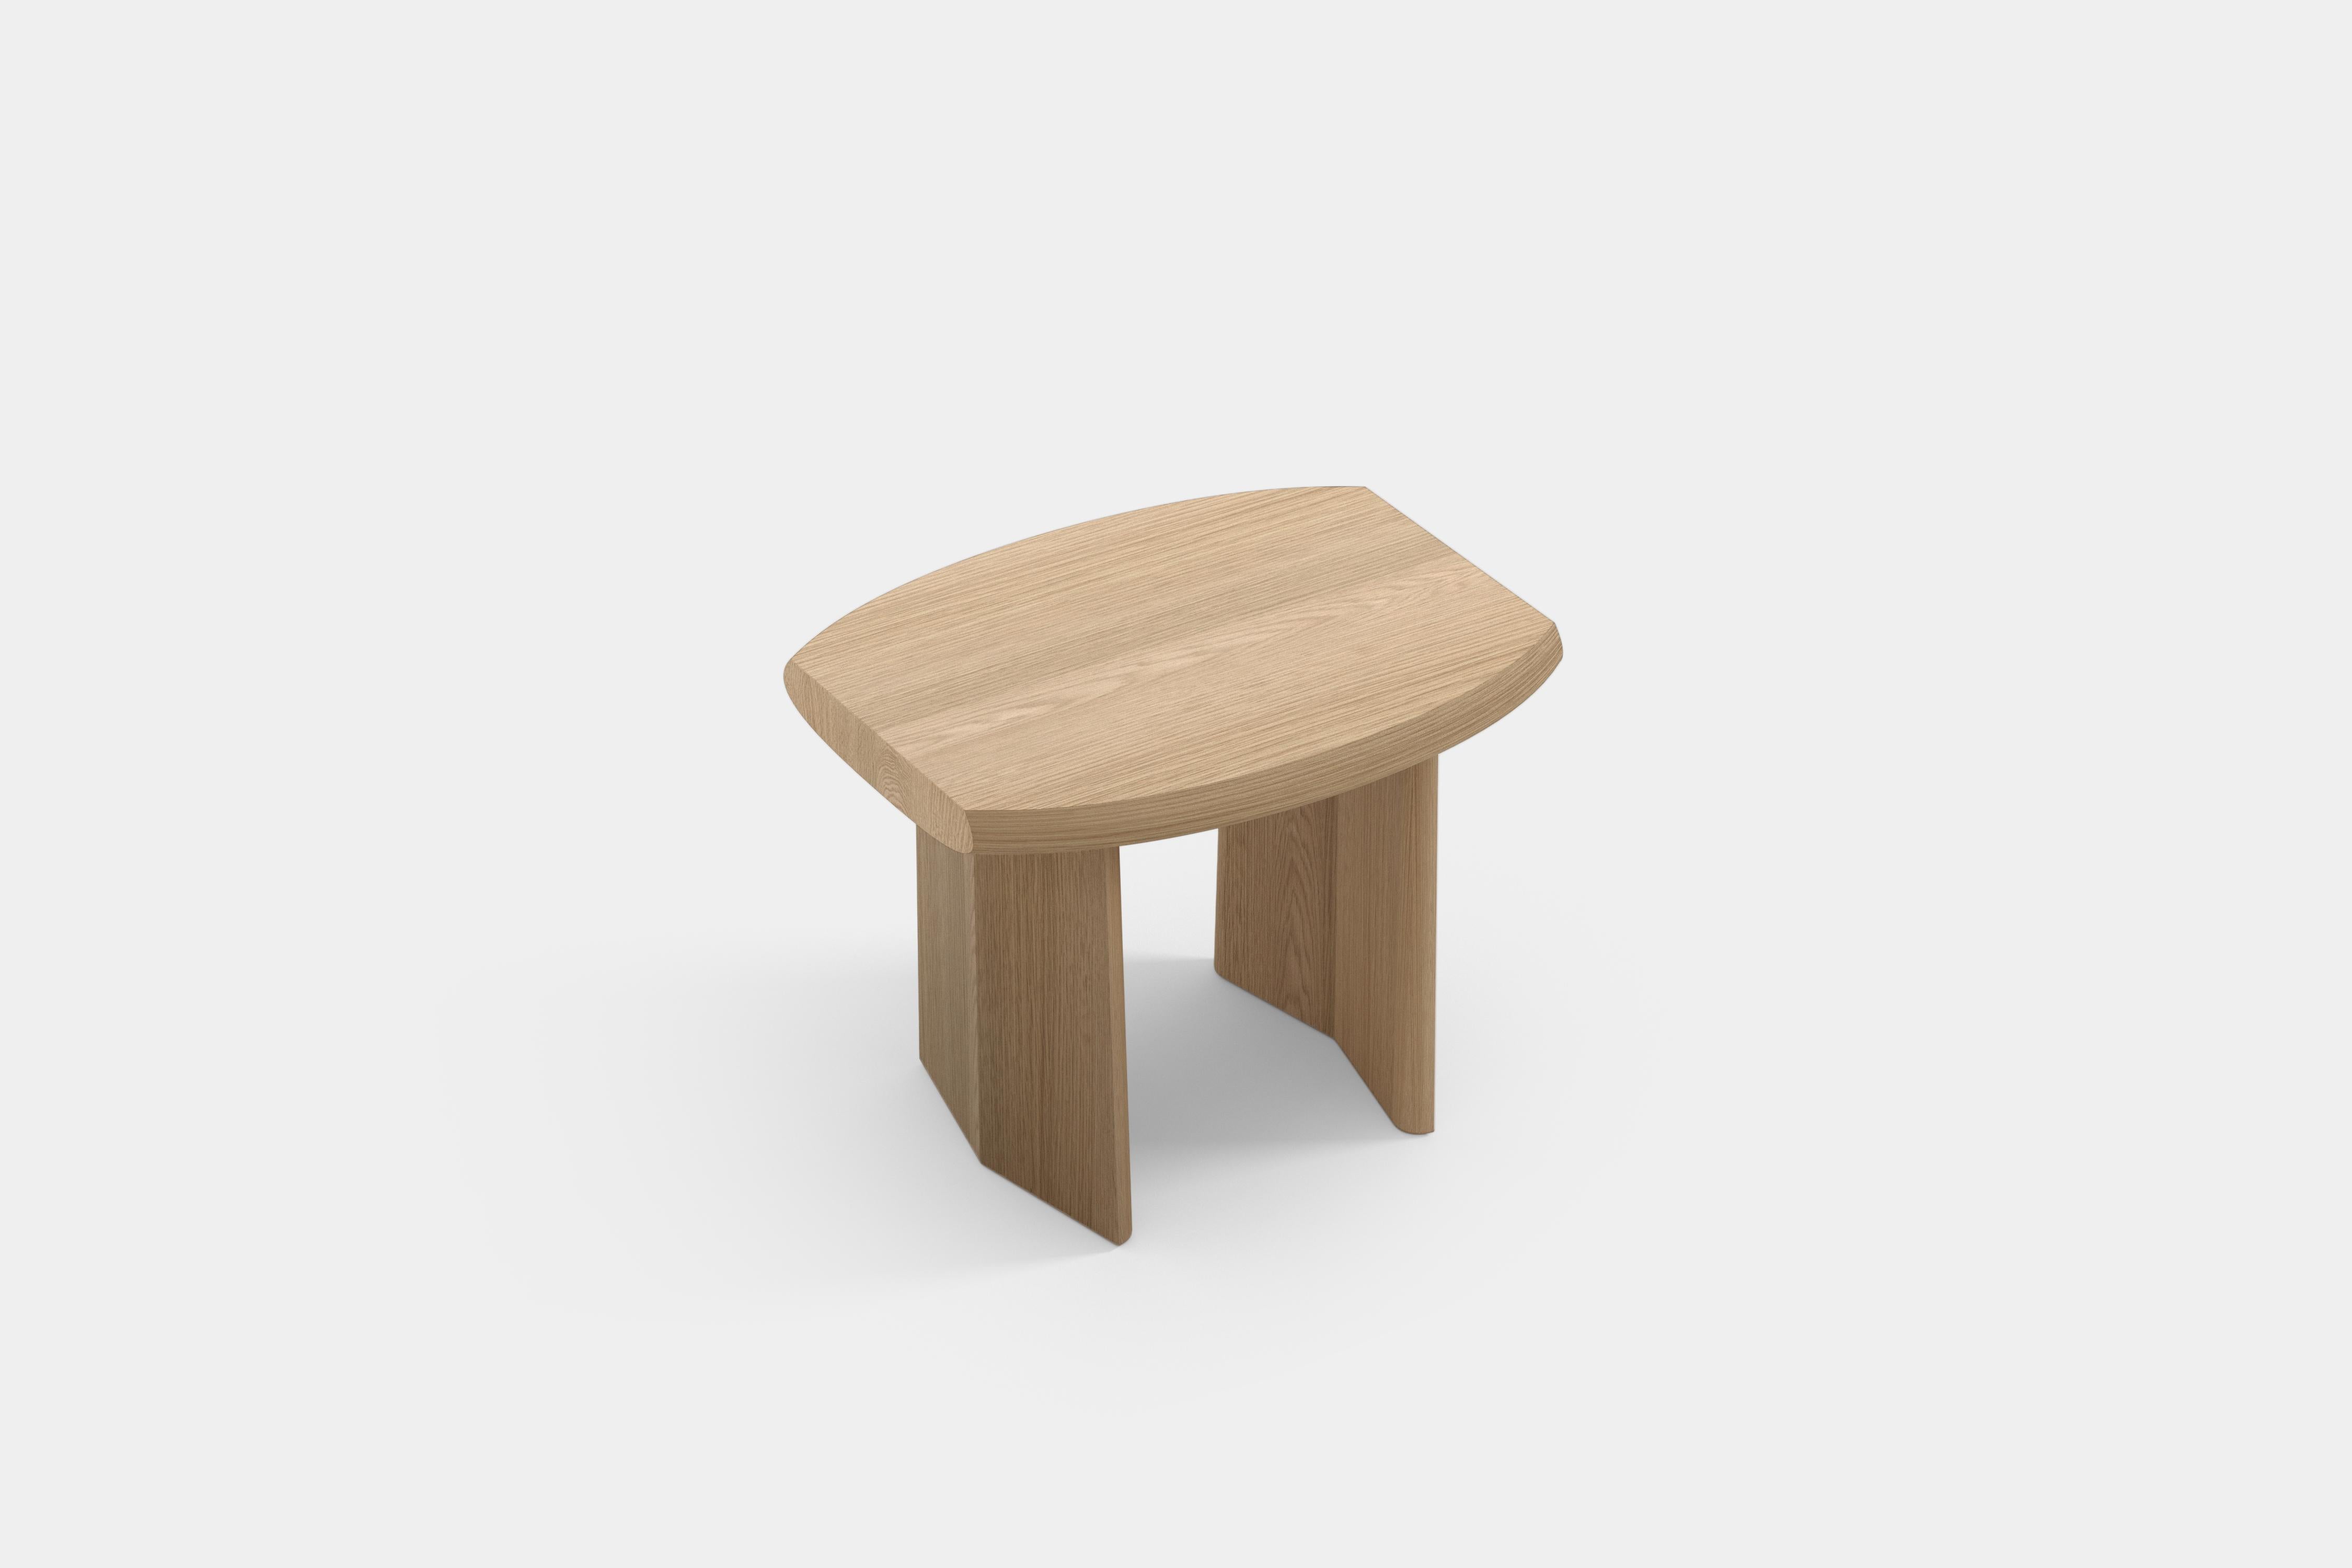 Ensemble de deux tables d'appoint peana, table de nuit en bois naturel de chêne par Joel Escalona.

Peana, qui se traduit en anglais par base ou piédestal, est une série de tables et de surfaces différentes inspirées par l'idée de créer des